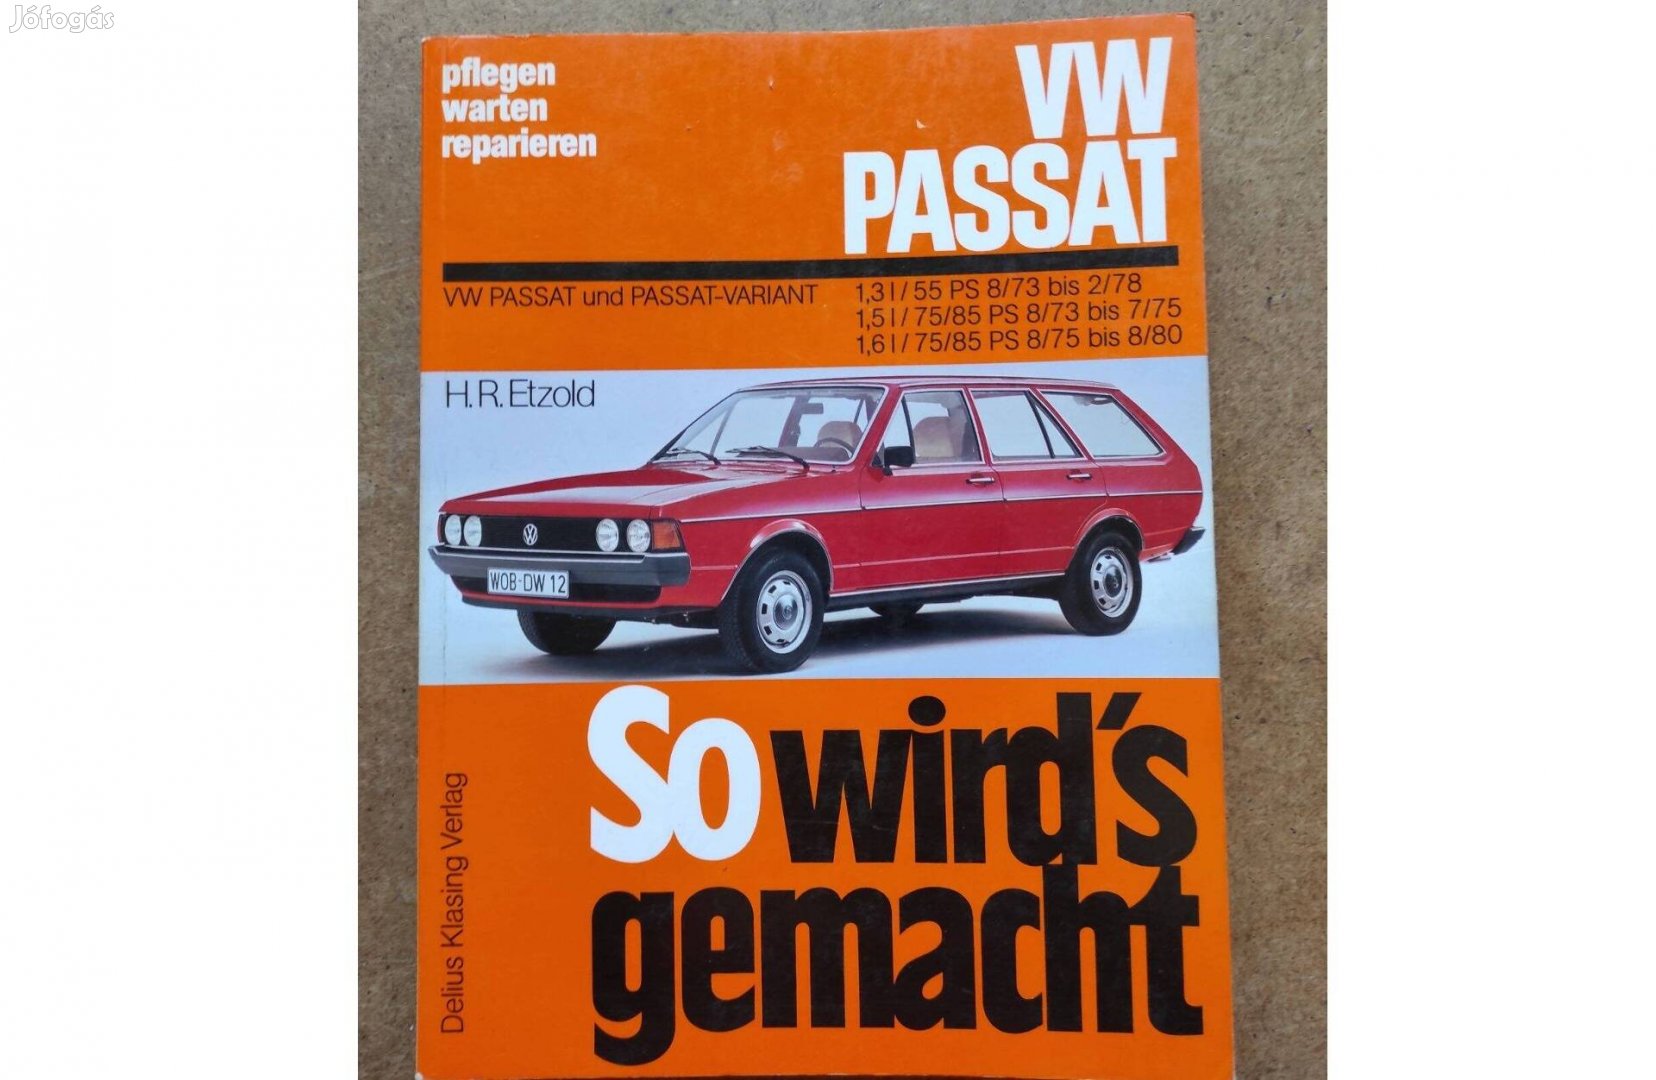 Volkswagen Vw. Passat javítási karbantartási könyv. 1975-